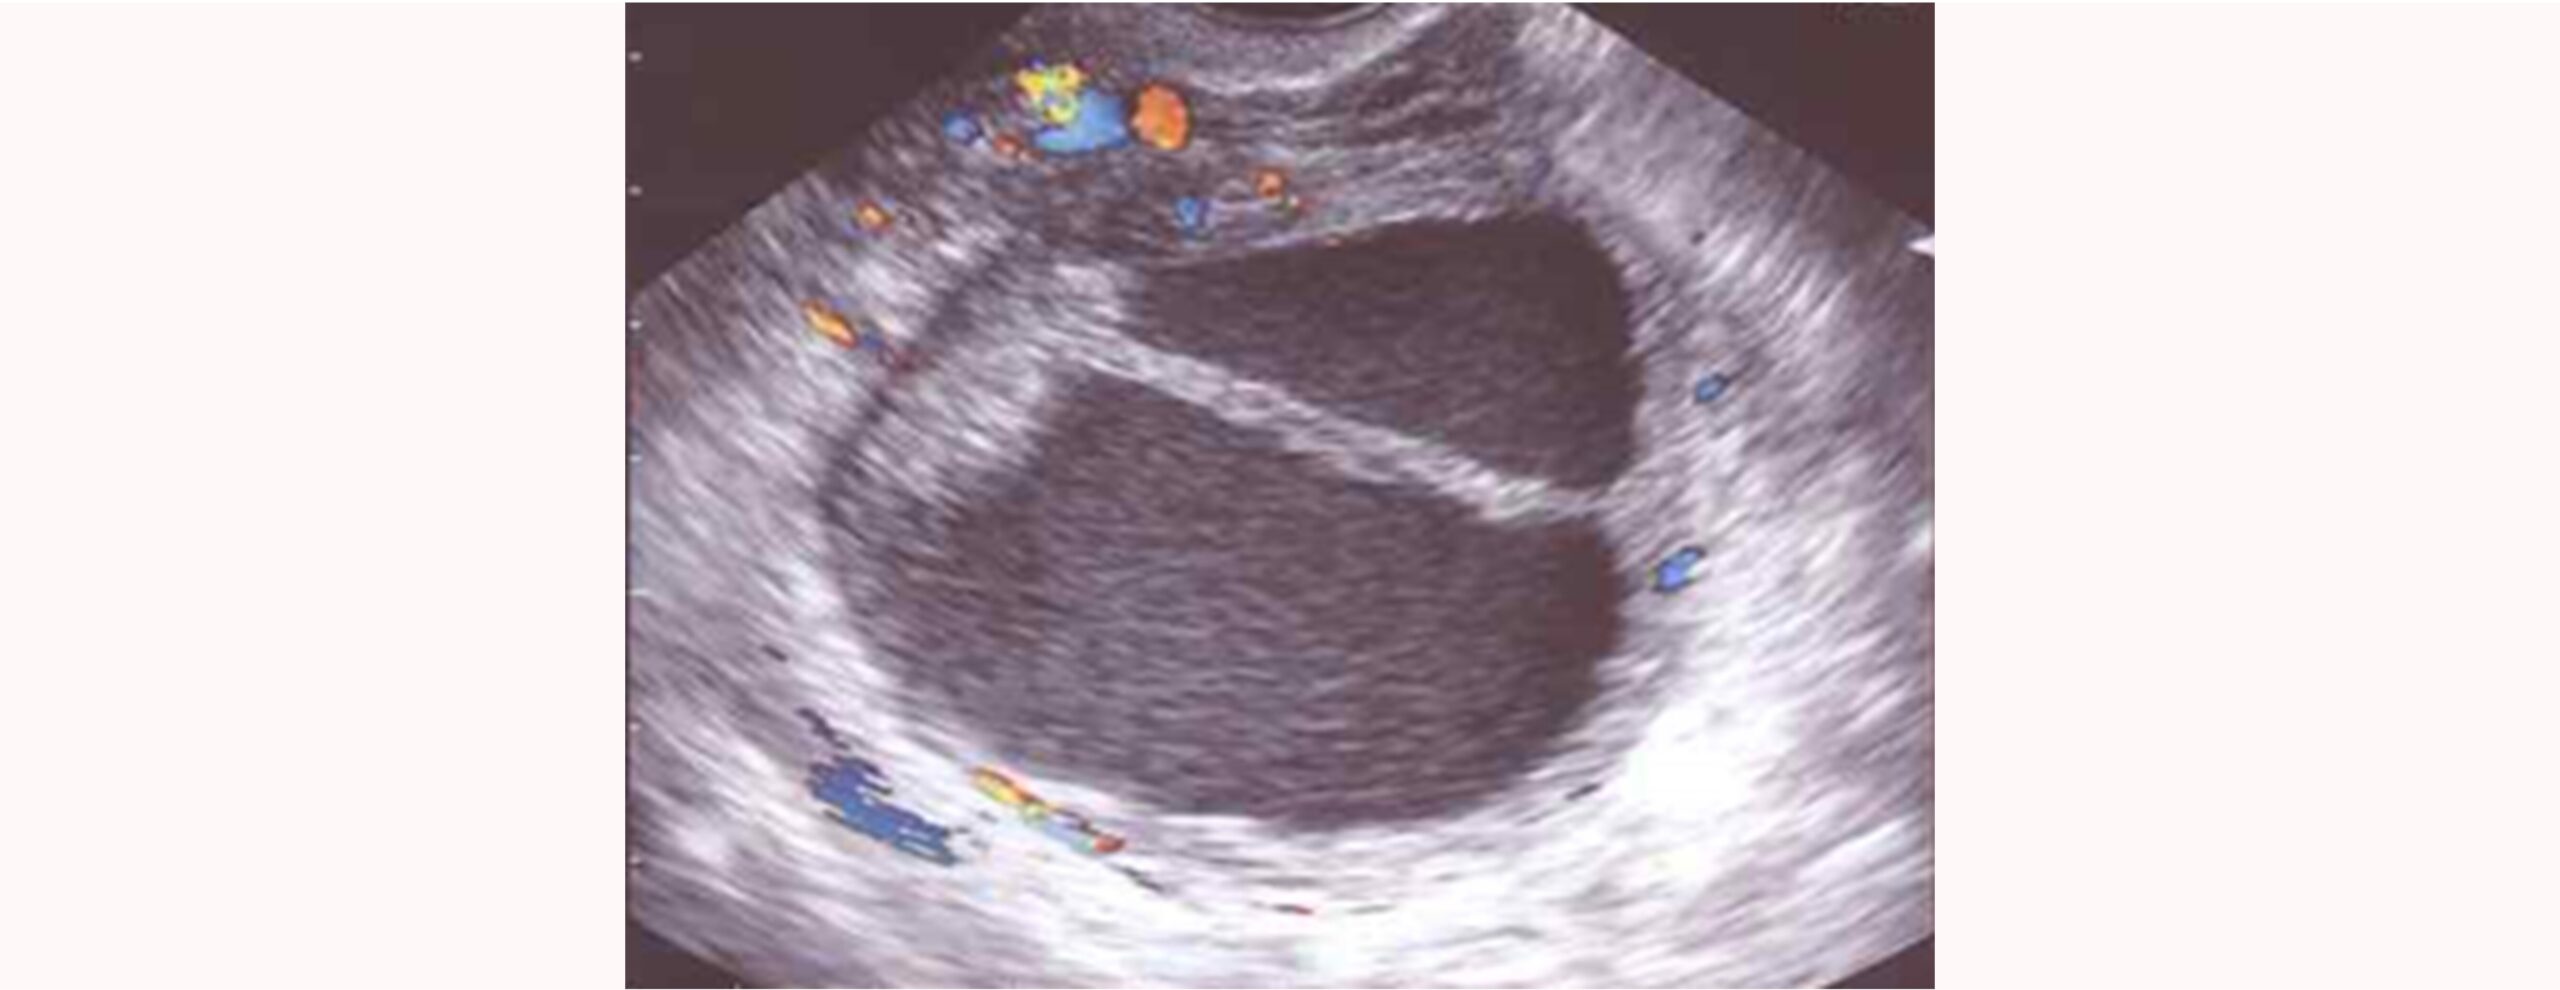 Imagen real de útero con endometriosis